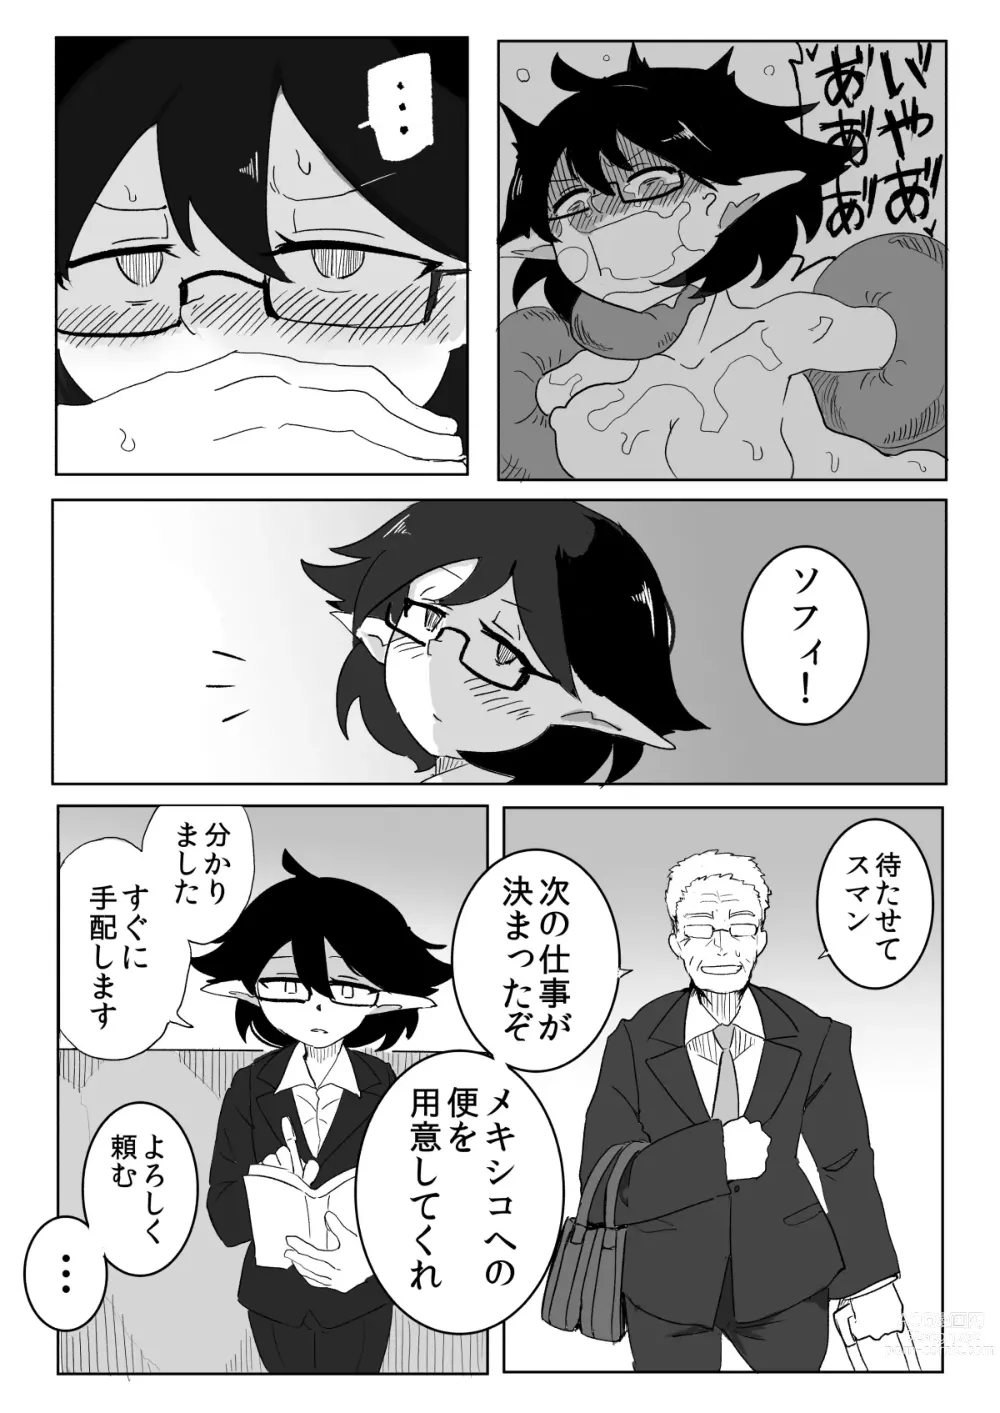 Page 57 of doujinshi Watashi to Shokushu no Kyuuryoubi 2